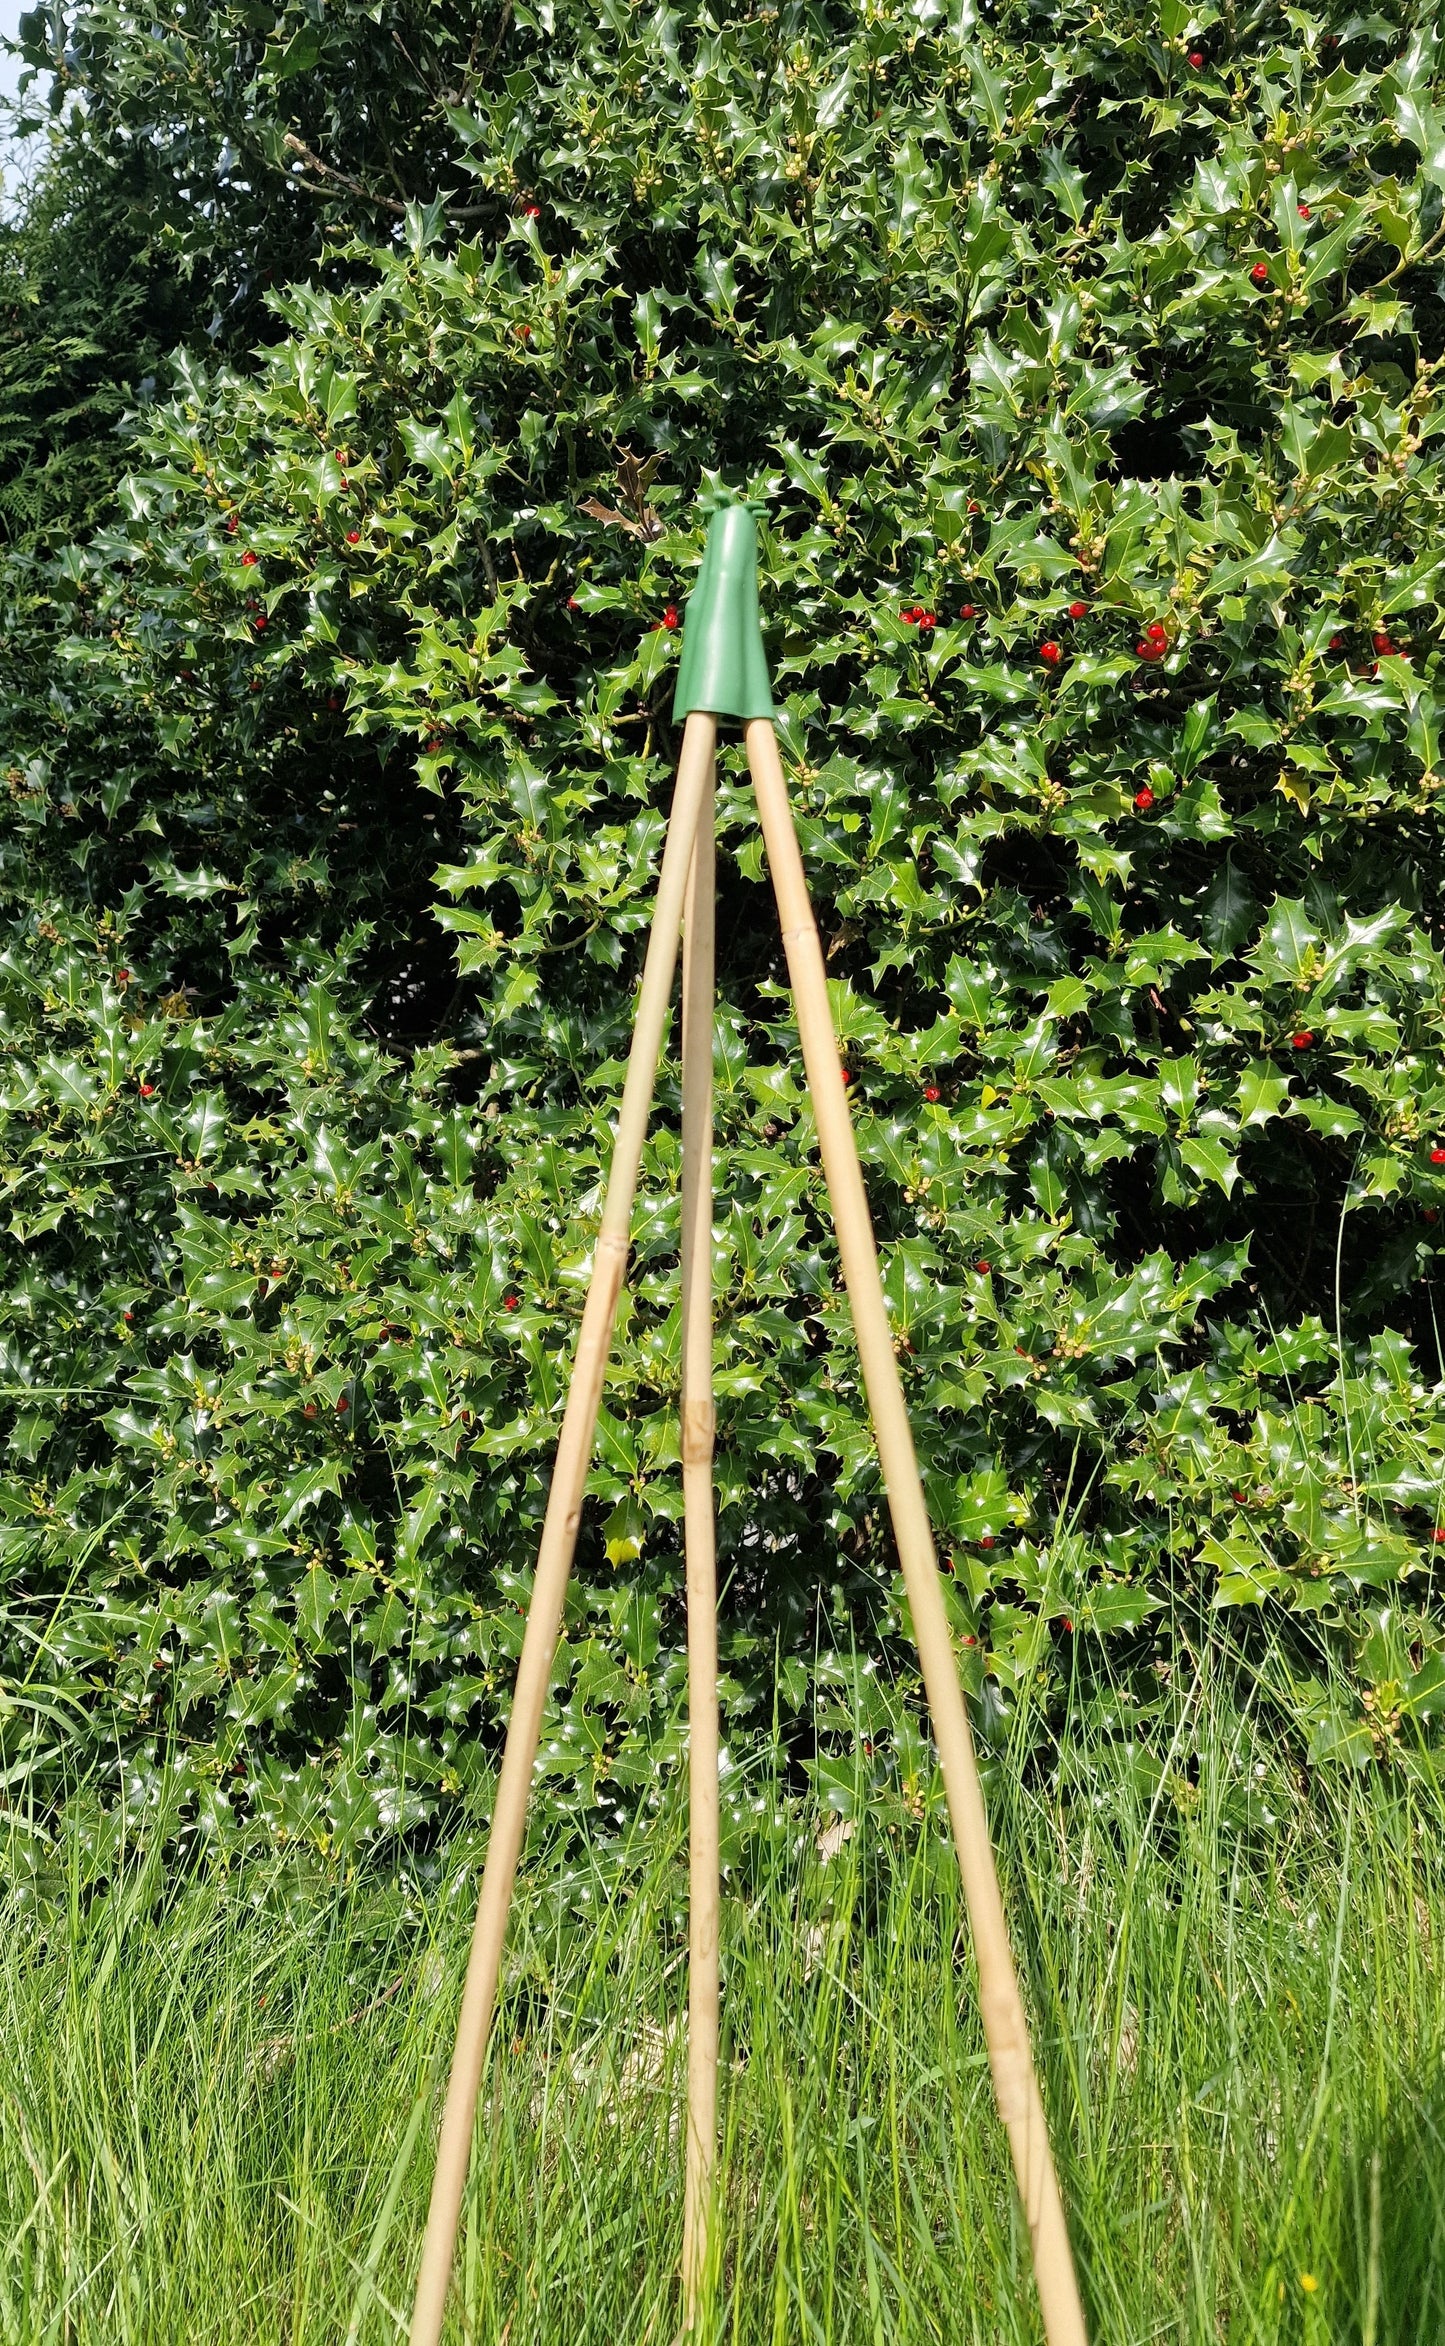 Pyramidenspitze für Bambusstäbe als Rankhilfe Rankgitter Kletterhilfe Grün 3 Stück